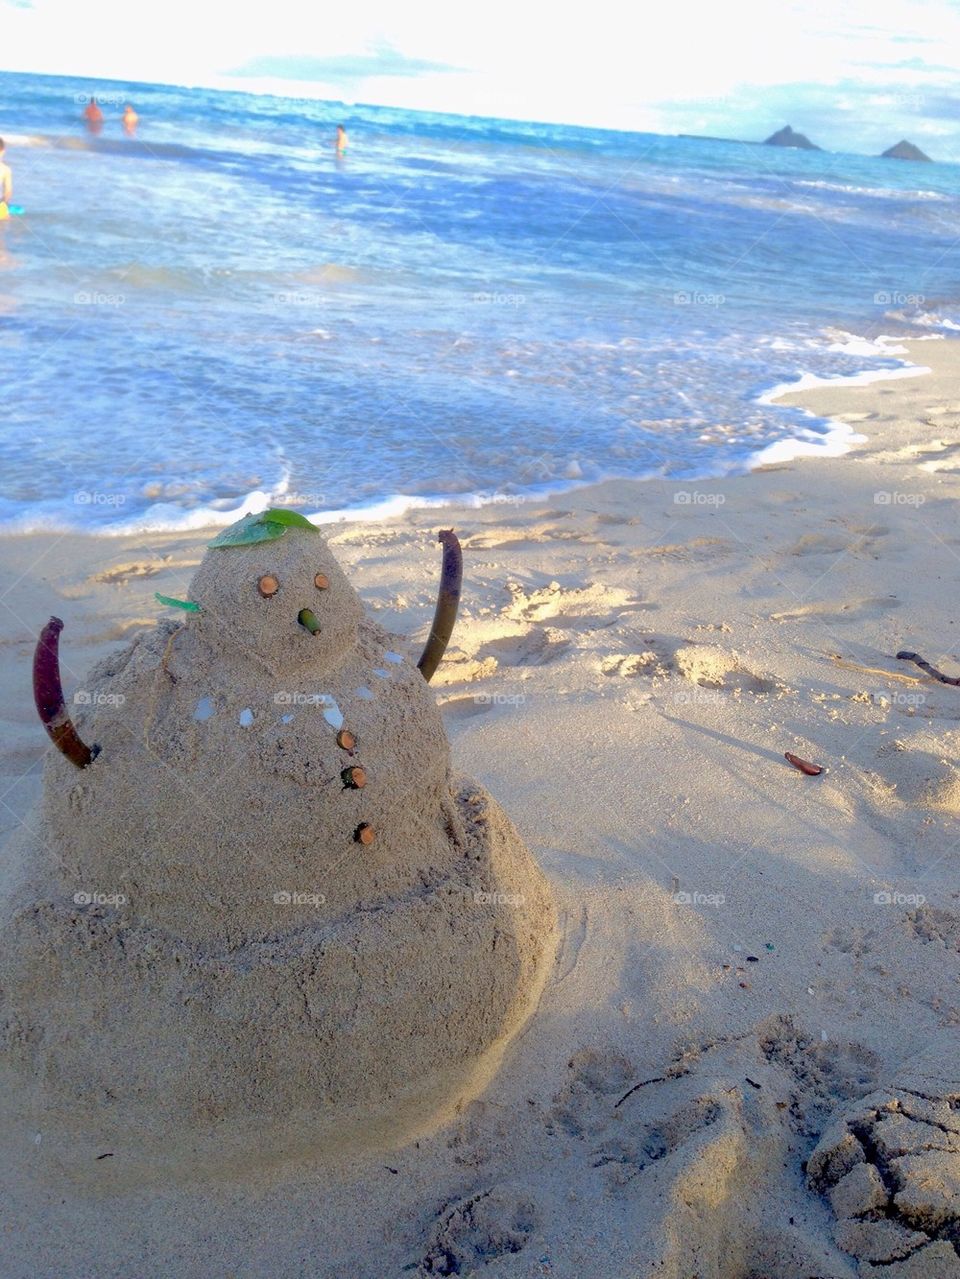 Beach snowman